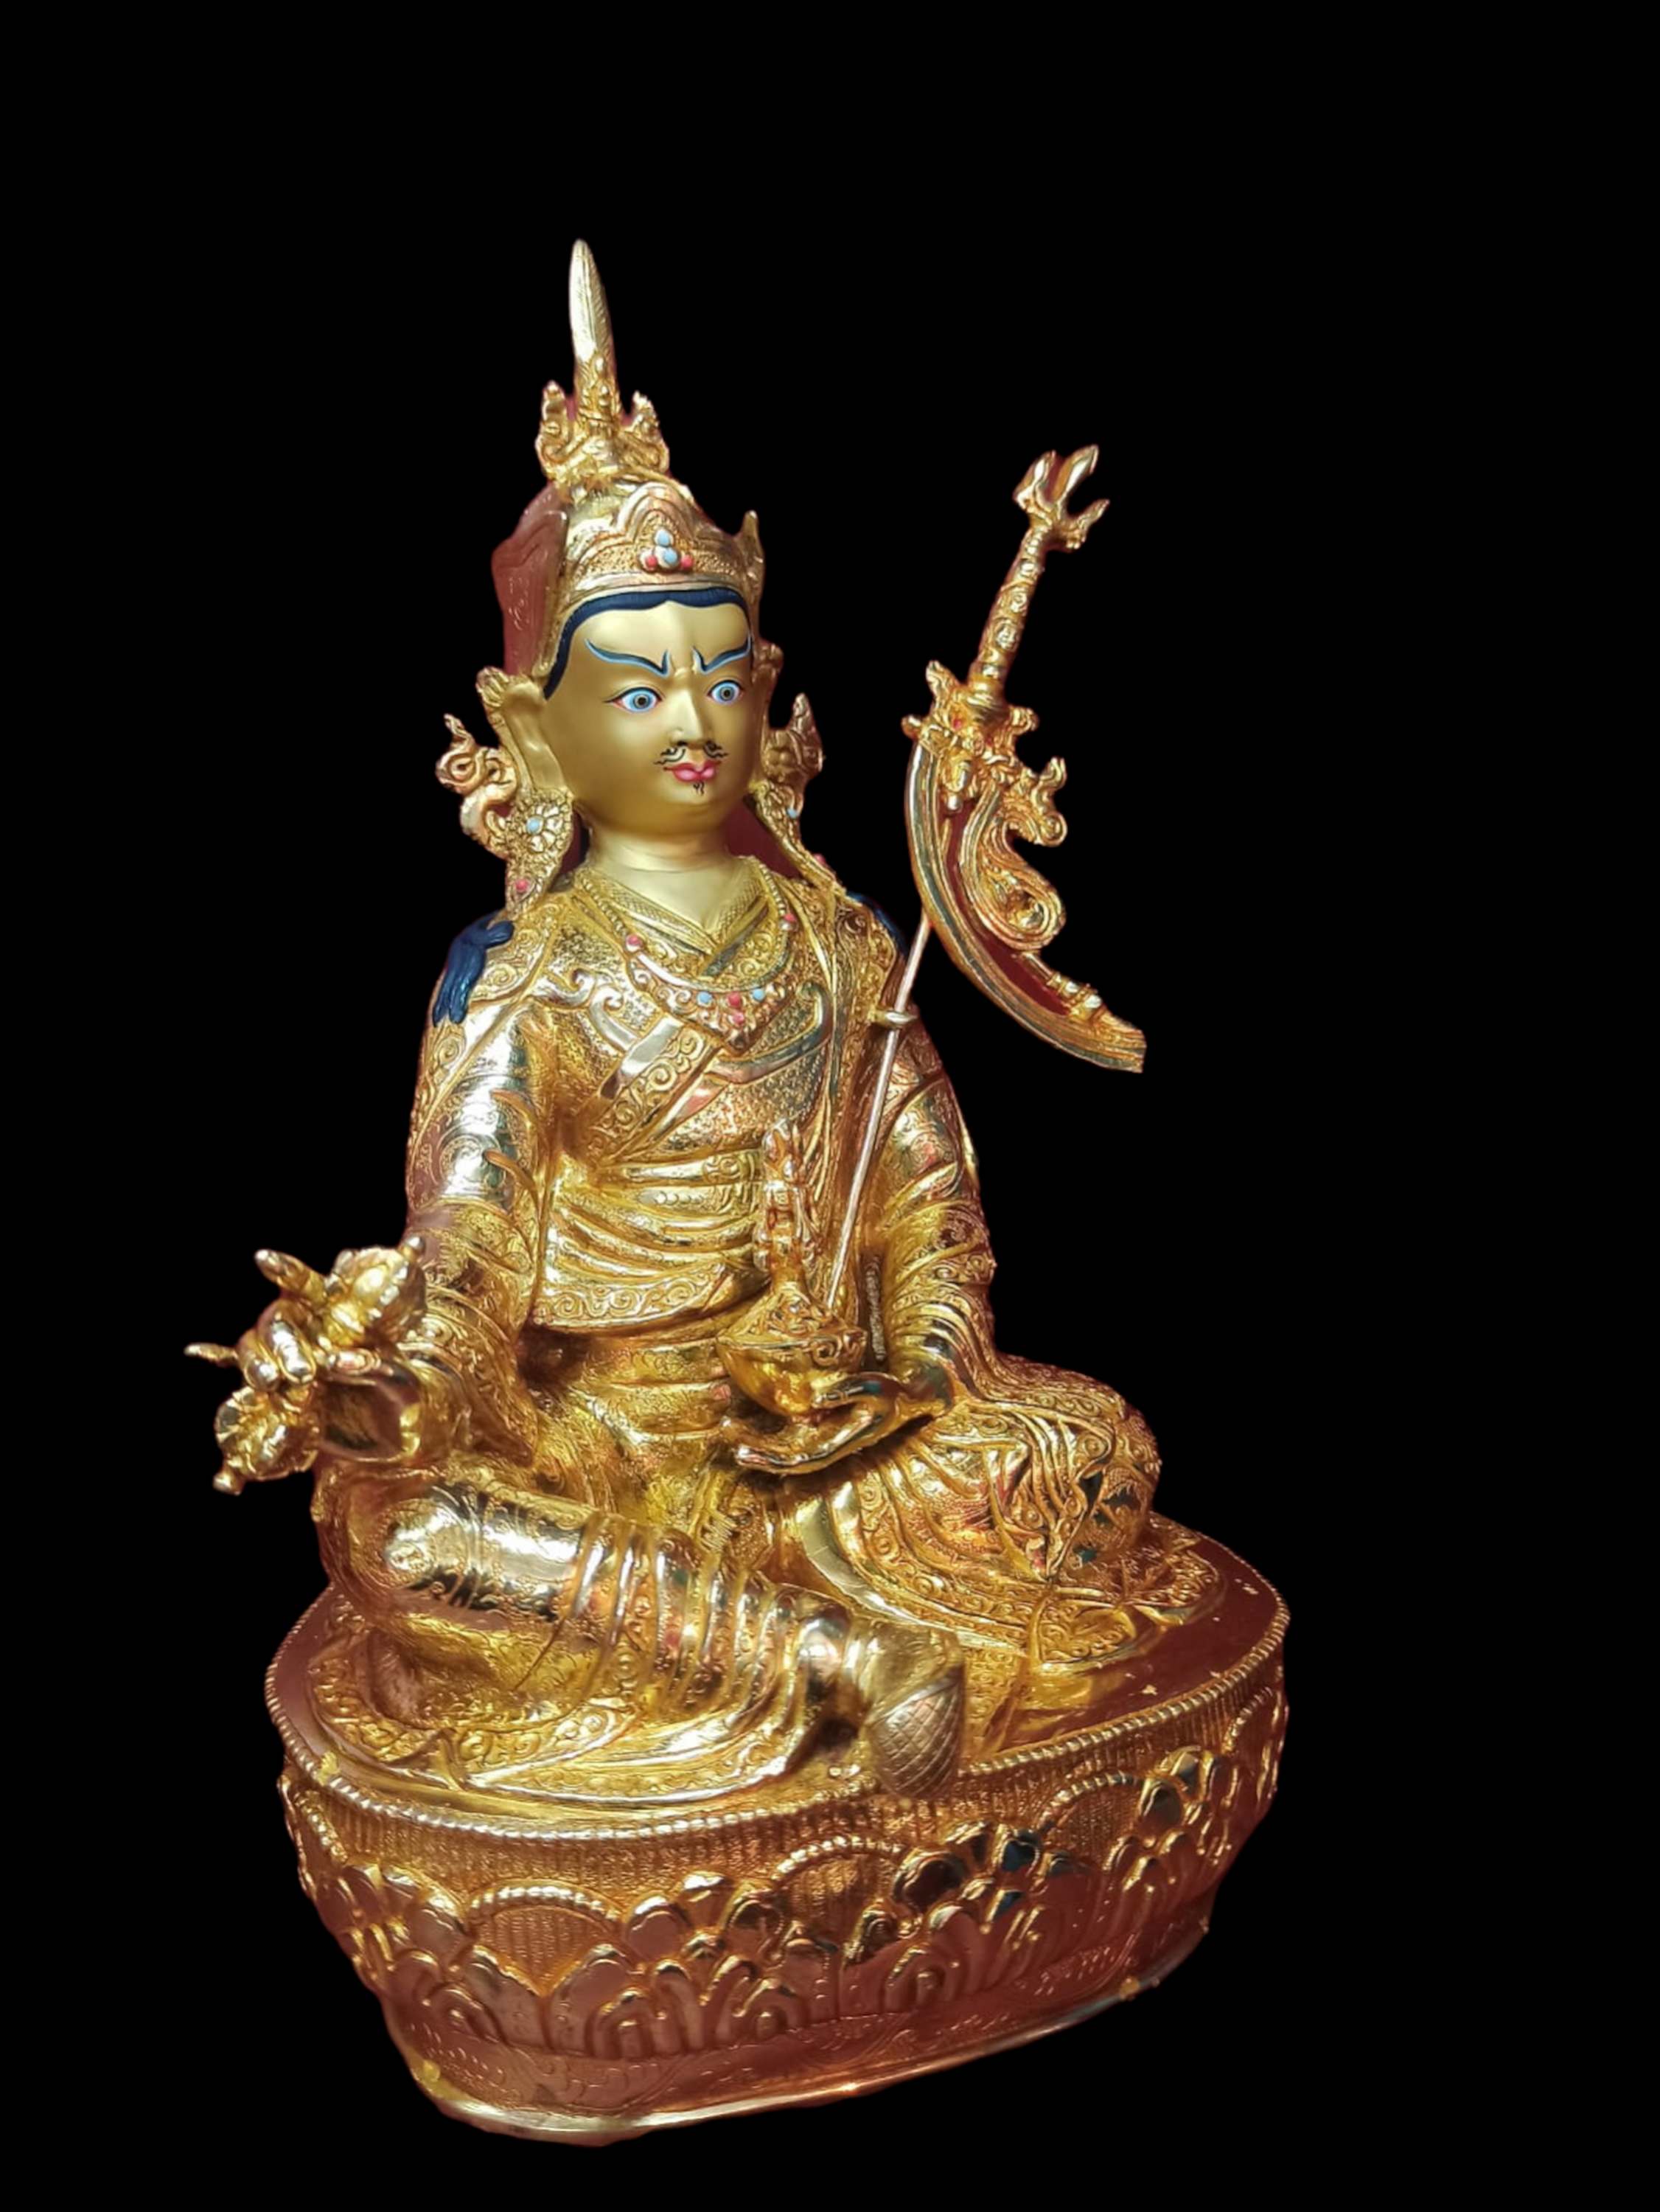 Buddhist Handmade Statue Of Padmasambhava, Guru, full Gold Plated, Face Painted